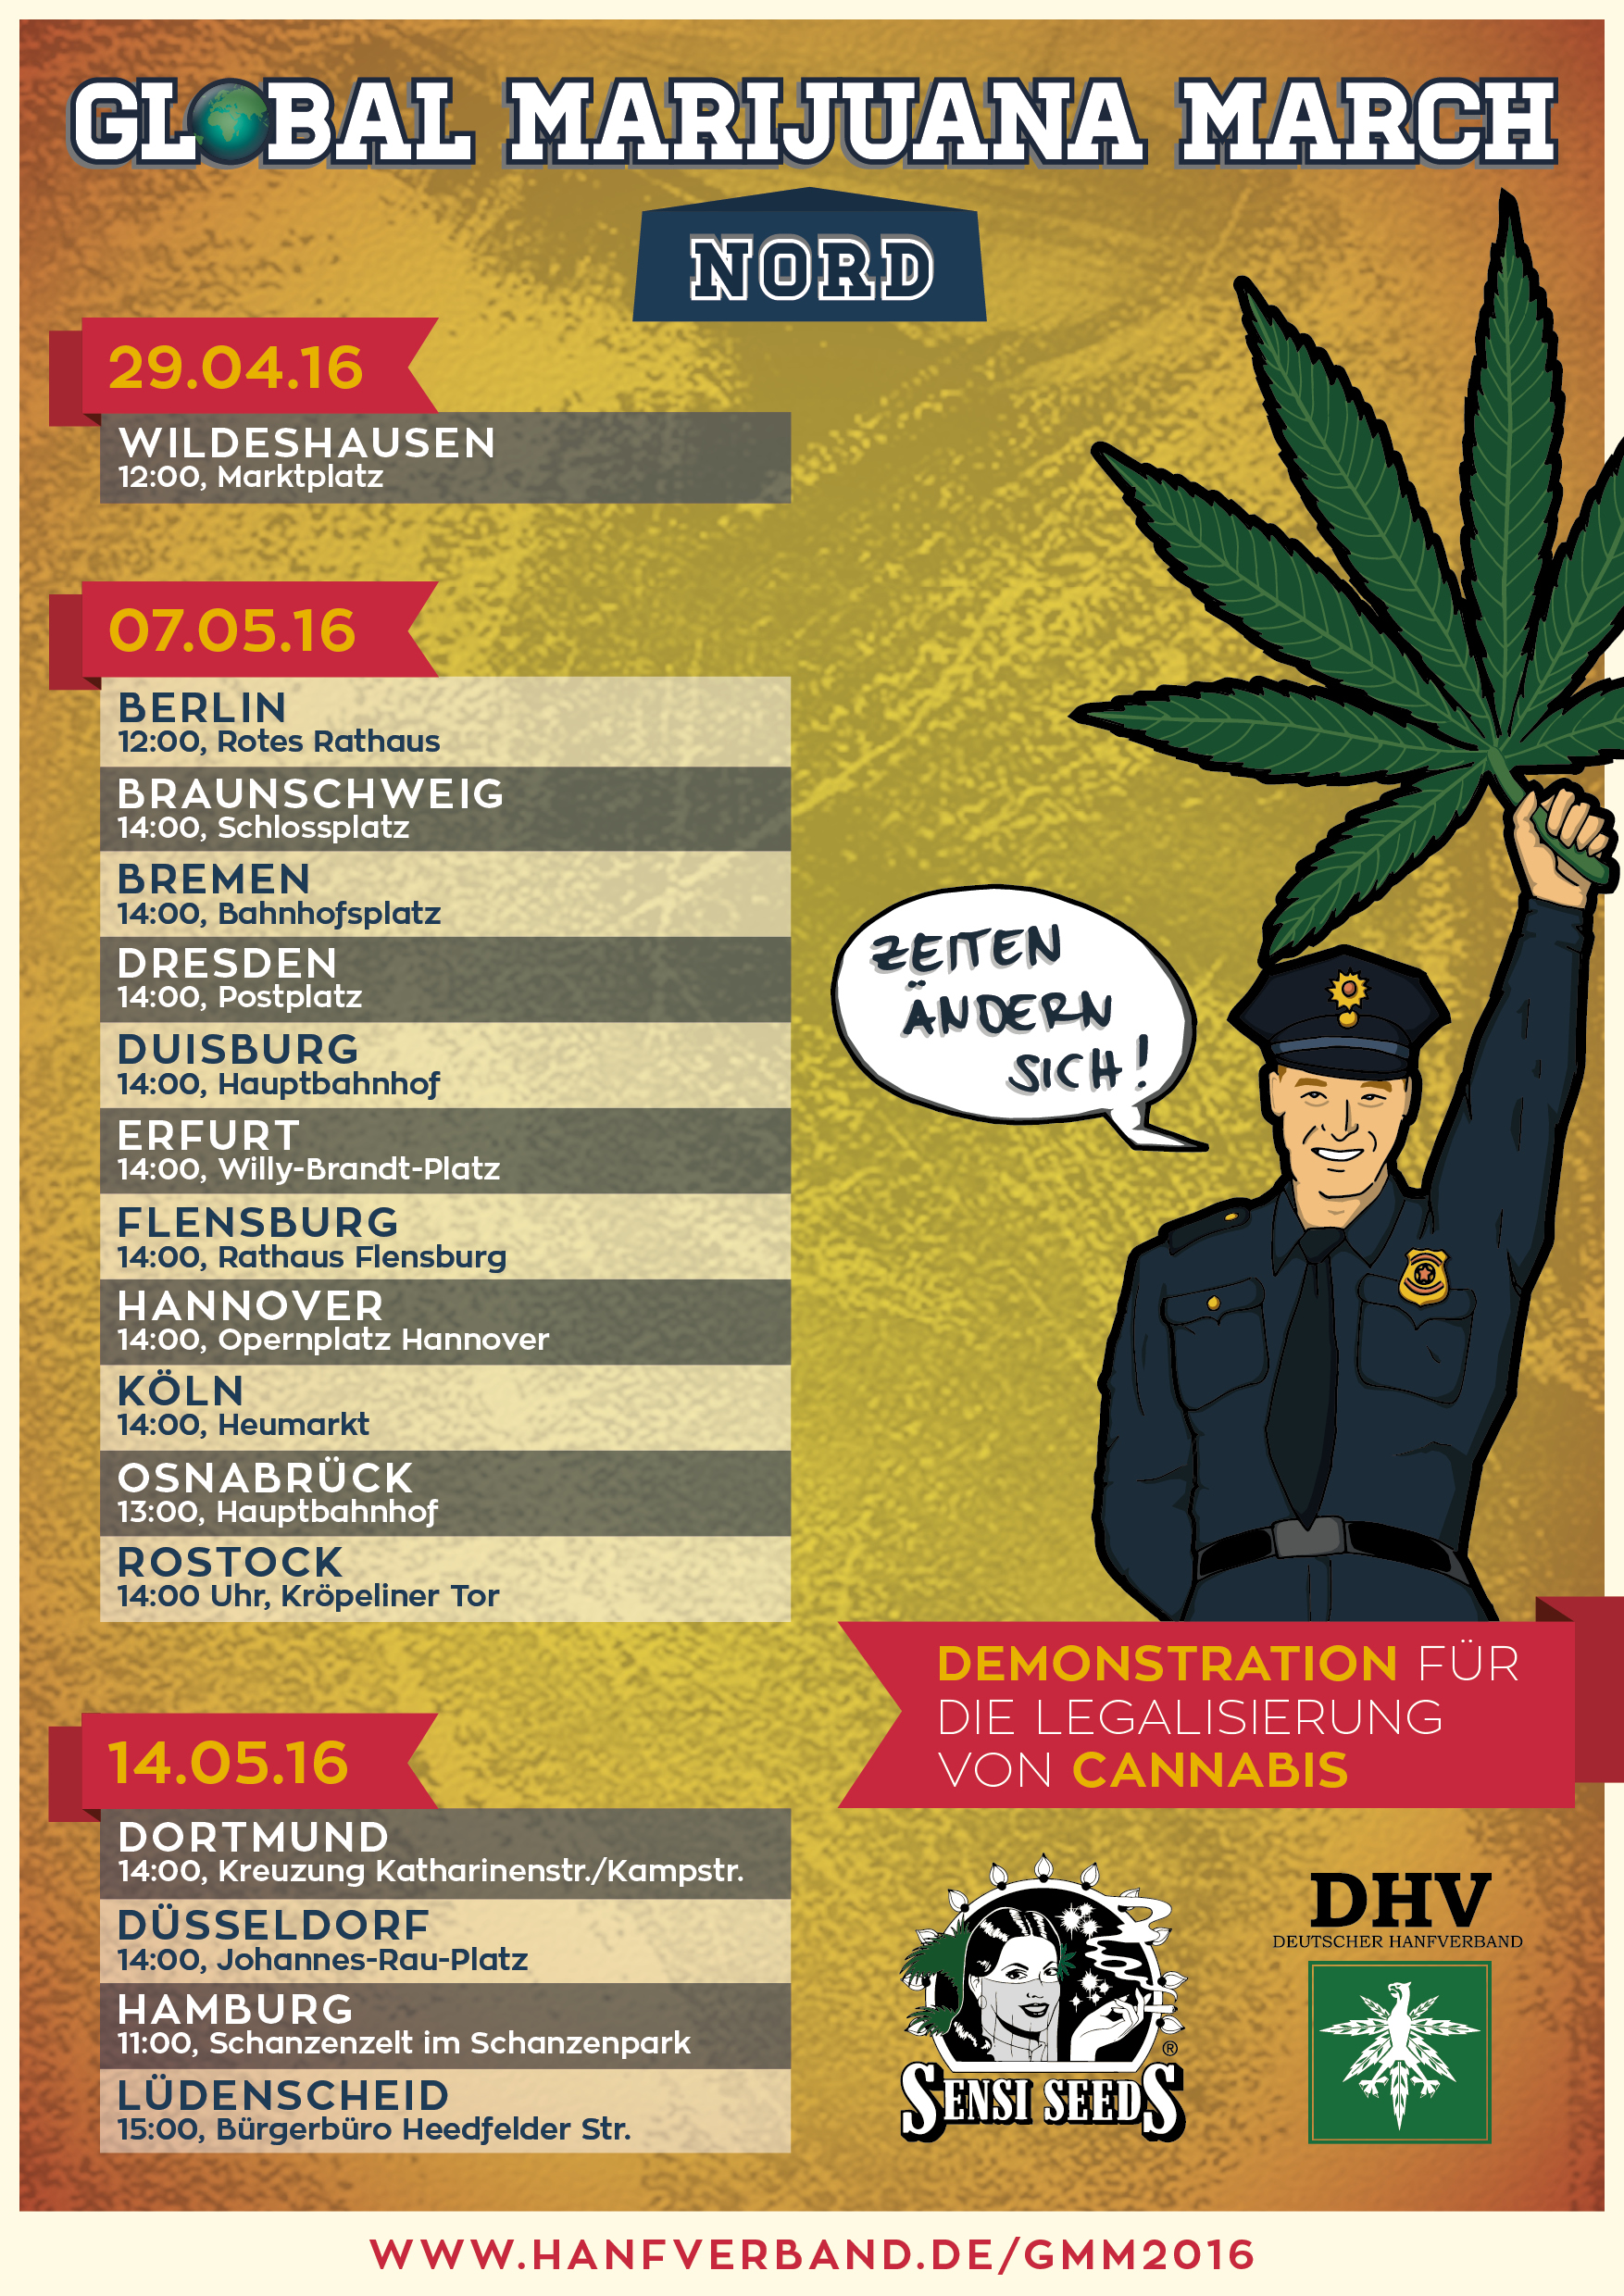 Global Marijuana March 2016 – Poster, Flyer und Aufkleber jetzt im DHV-Shop